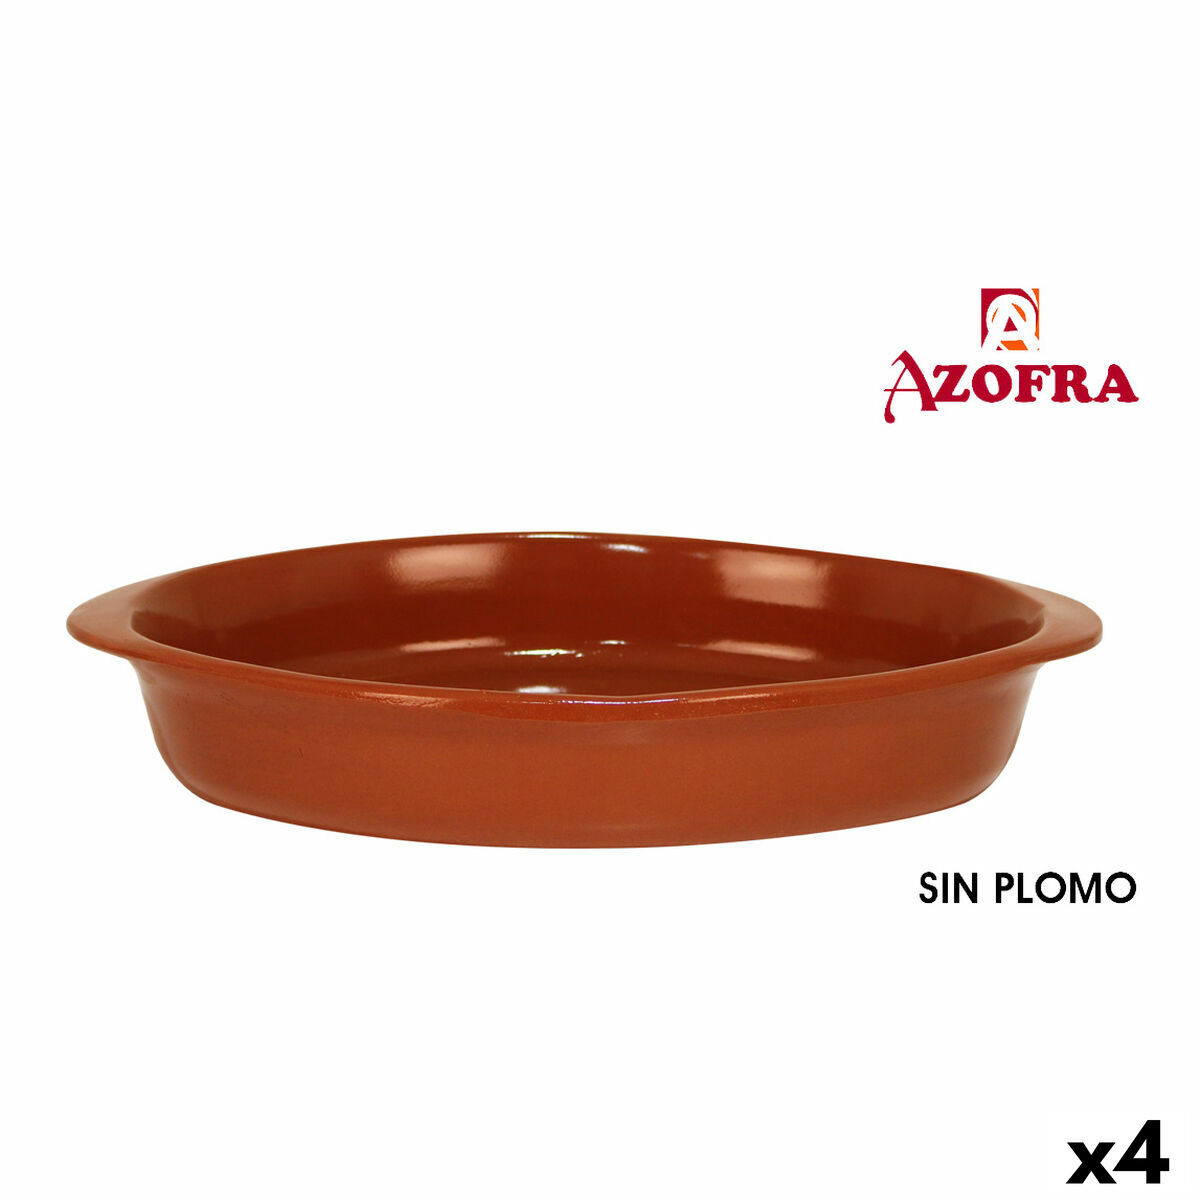 Cazuela Azofra Barro cocido Marrón (23 x 21 x 14 cm)